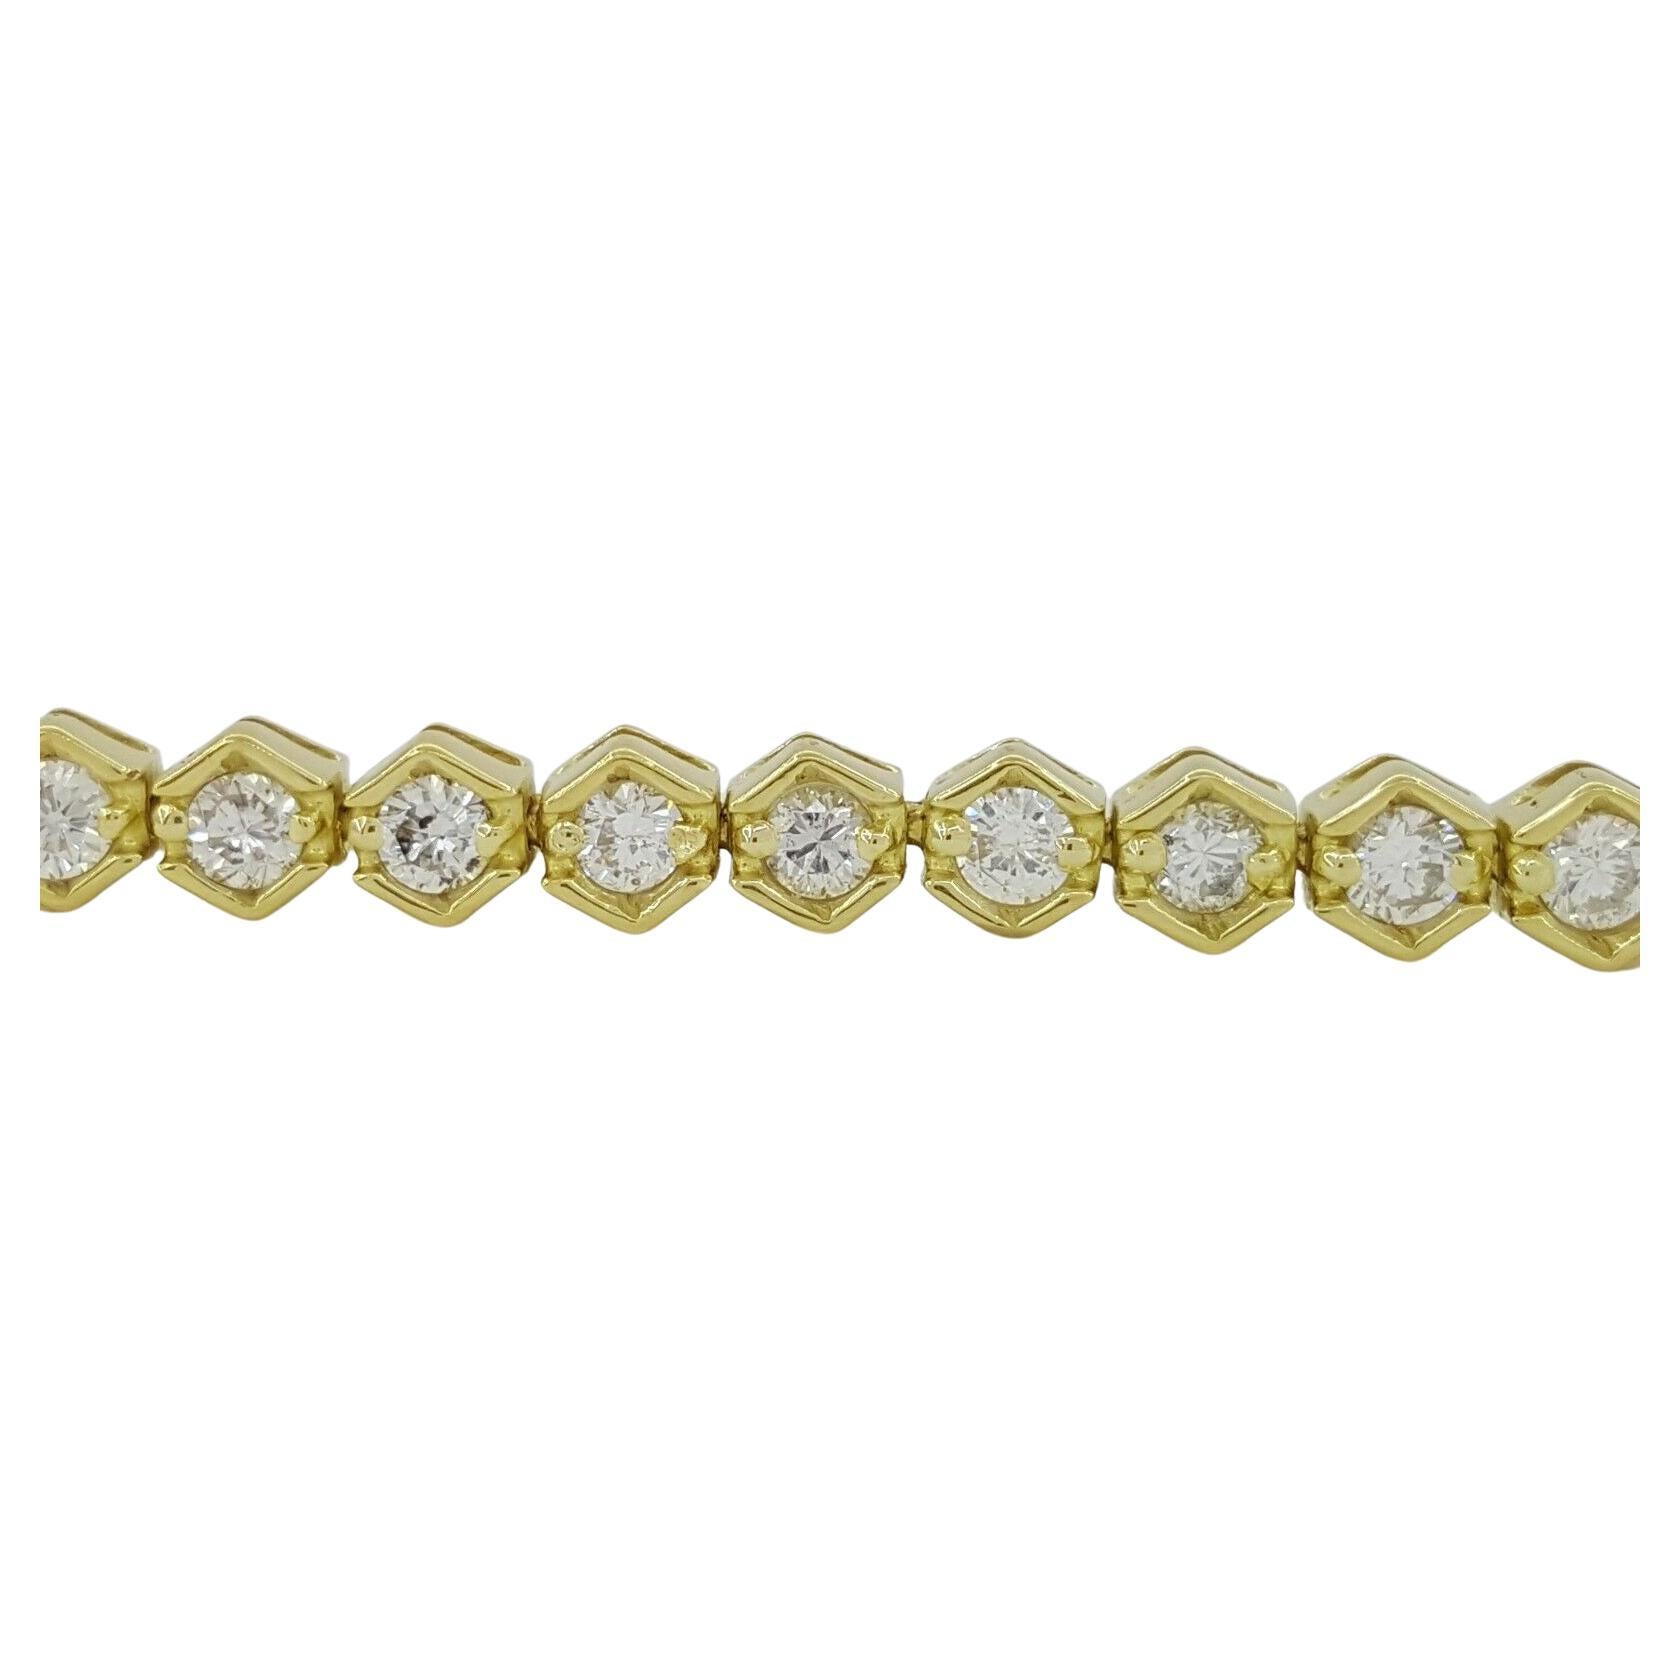 Bracelet tennis en or jaune 18K avec diamants ronds et brillants d'un poids total de 2,5 ct.
